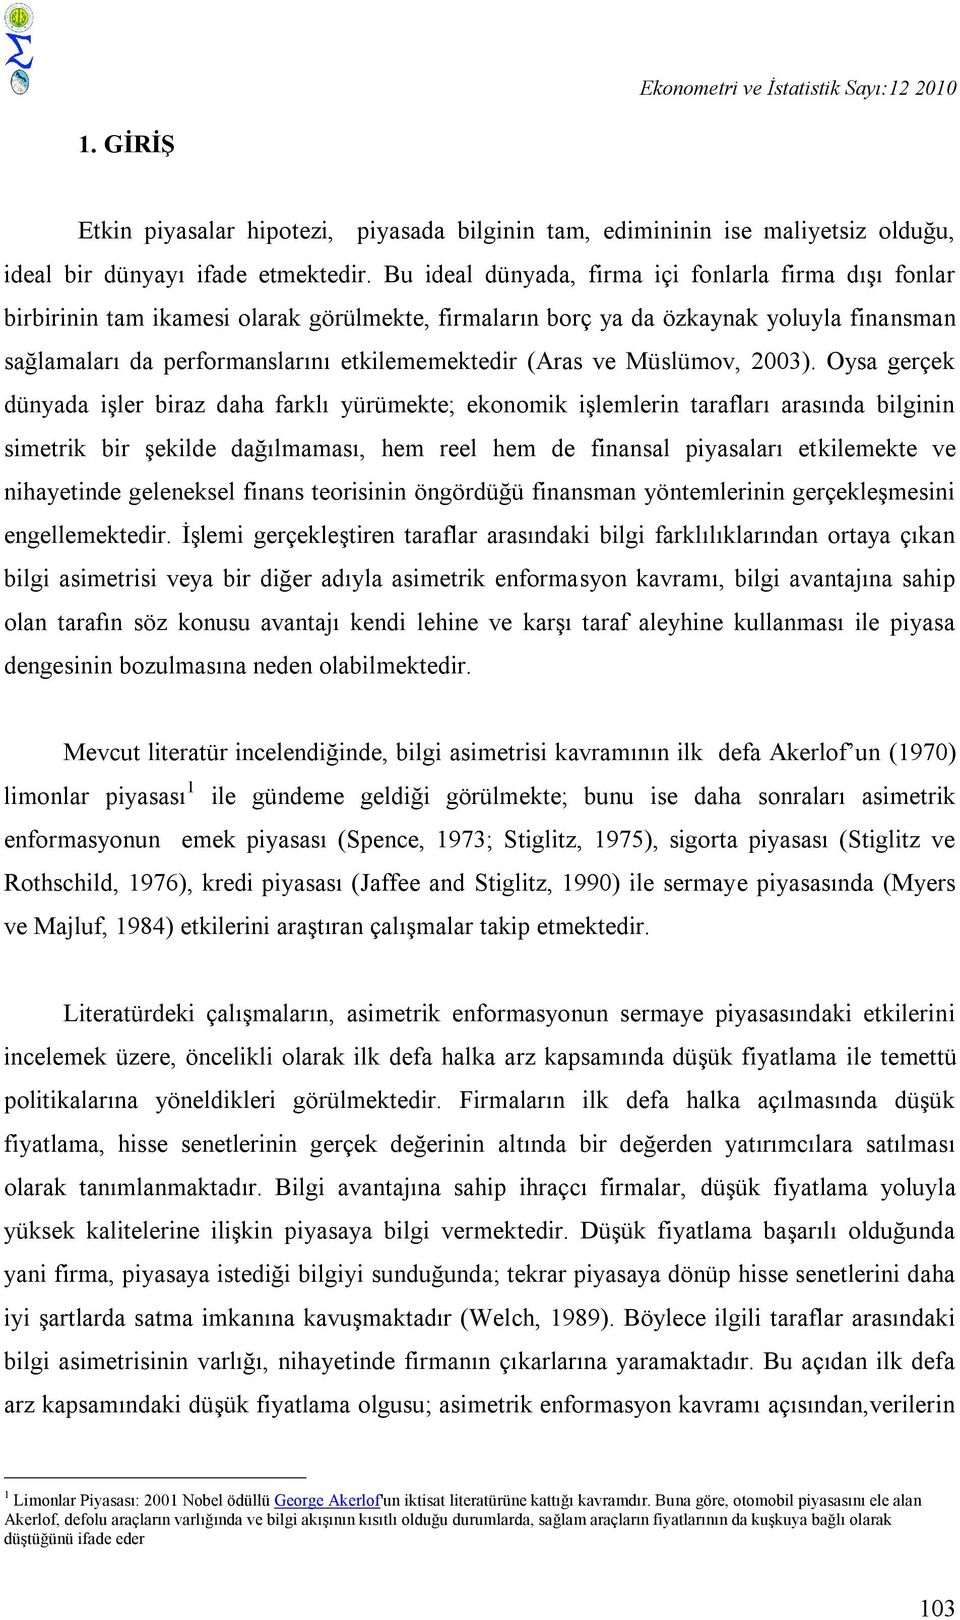 (Aras ve Müslümov, 2003).